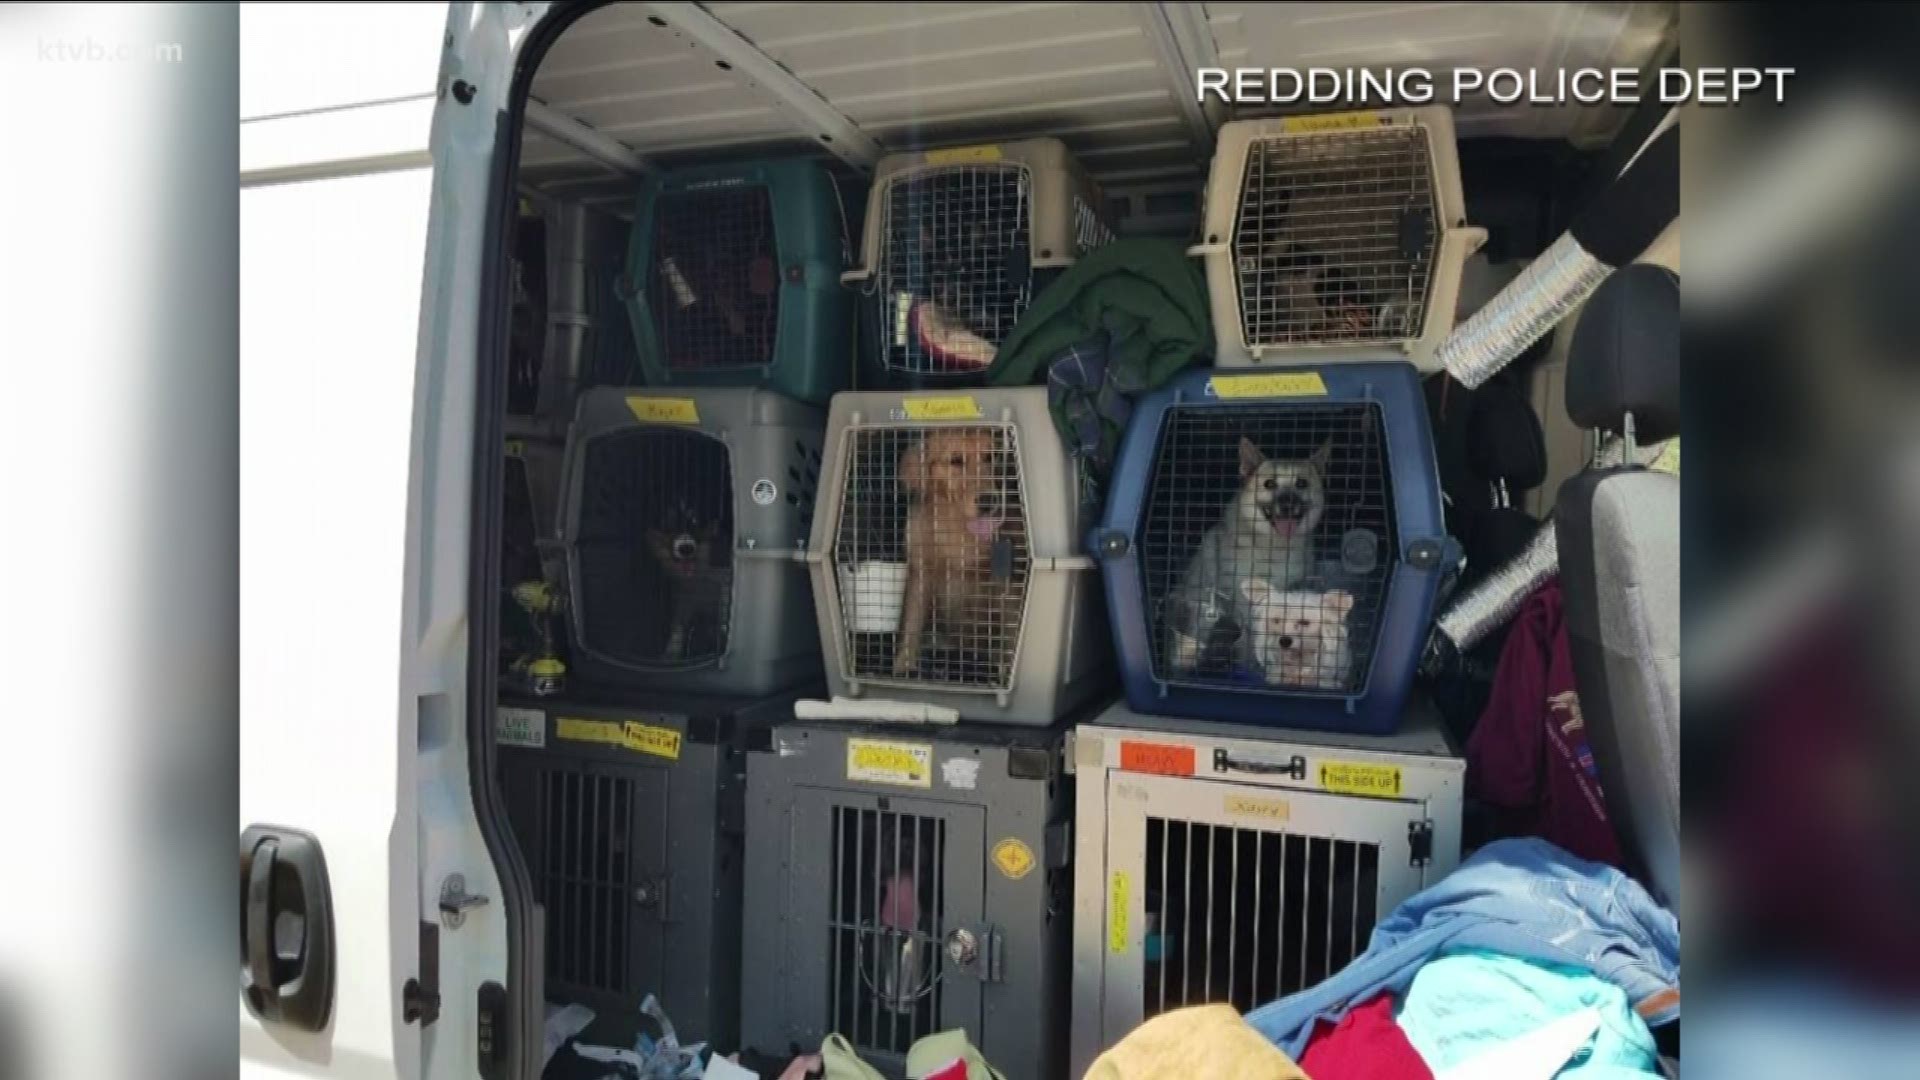 Show dogs in stolen van found.